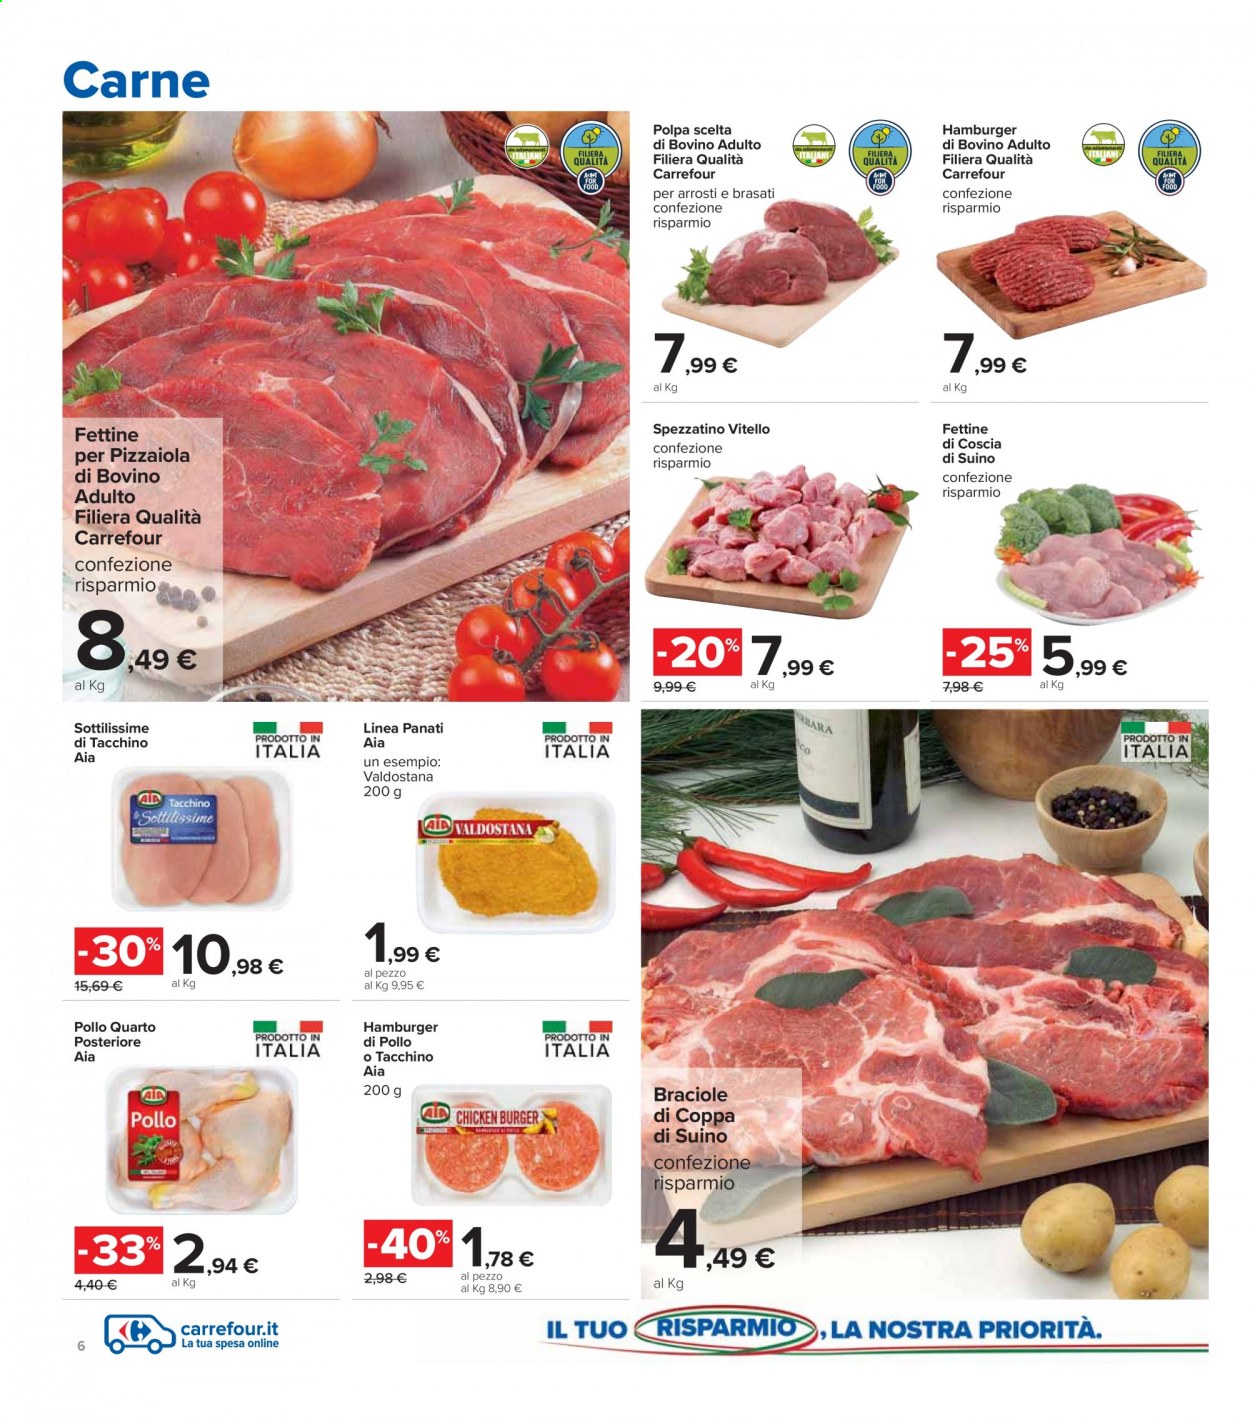 thumbnail - Volantino Carrefour - 8/3/2021 - 21/3/2021 - Prodotti in offerta - spezzatino, AIA, sottilissime di tacchino, vitello, hamburger, hamburger di pollo, coppa di suino, suino. Pagina 6.